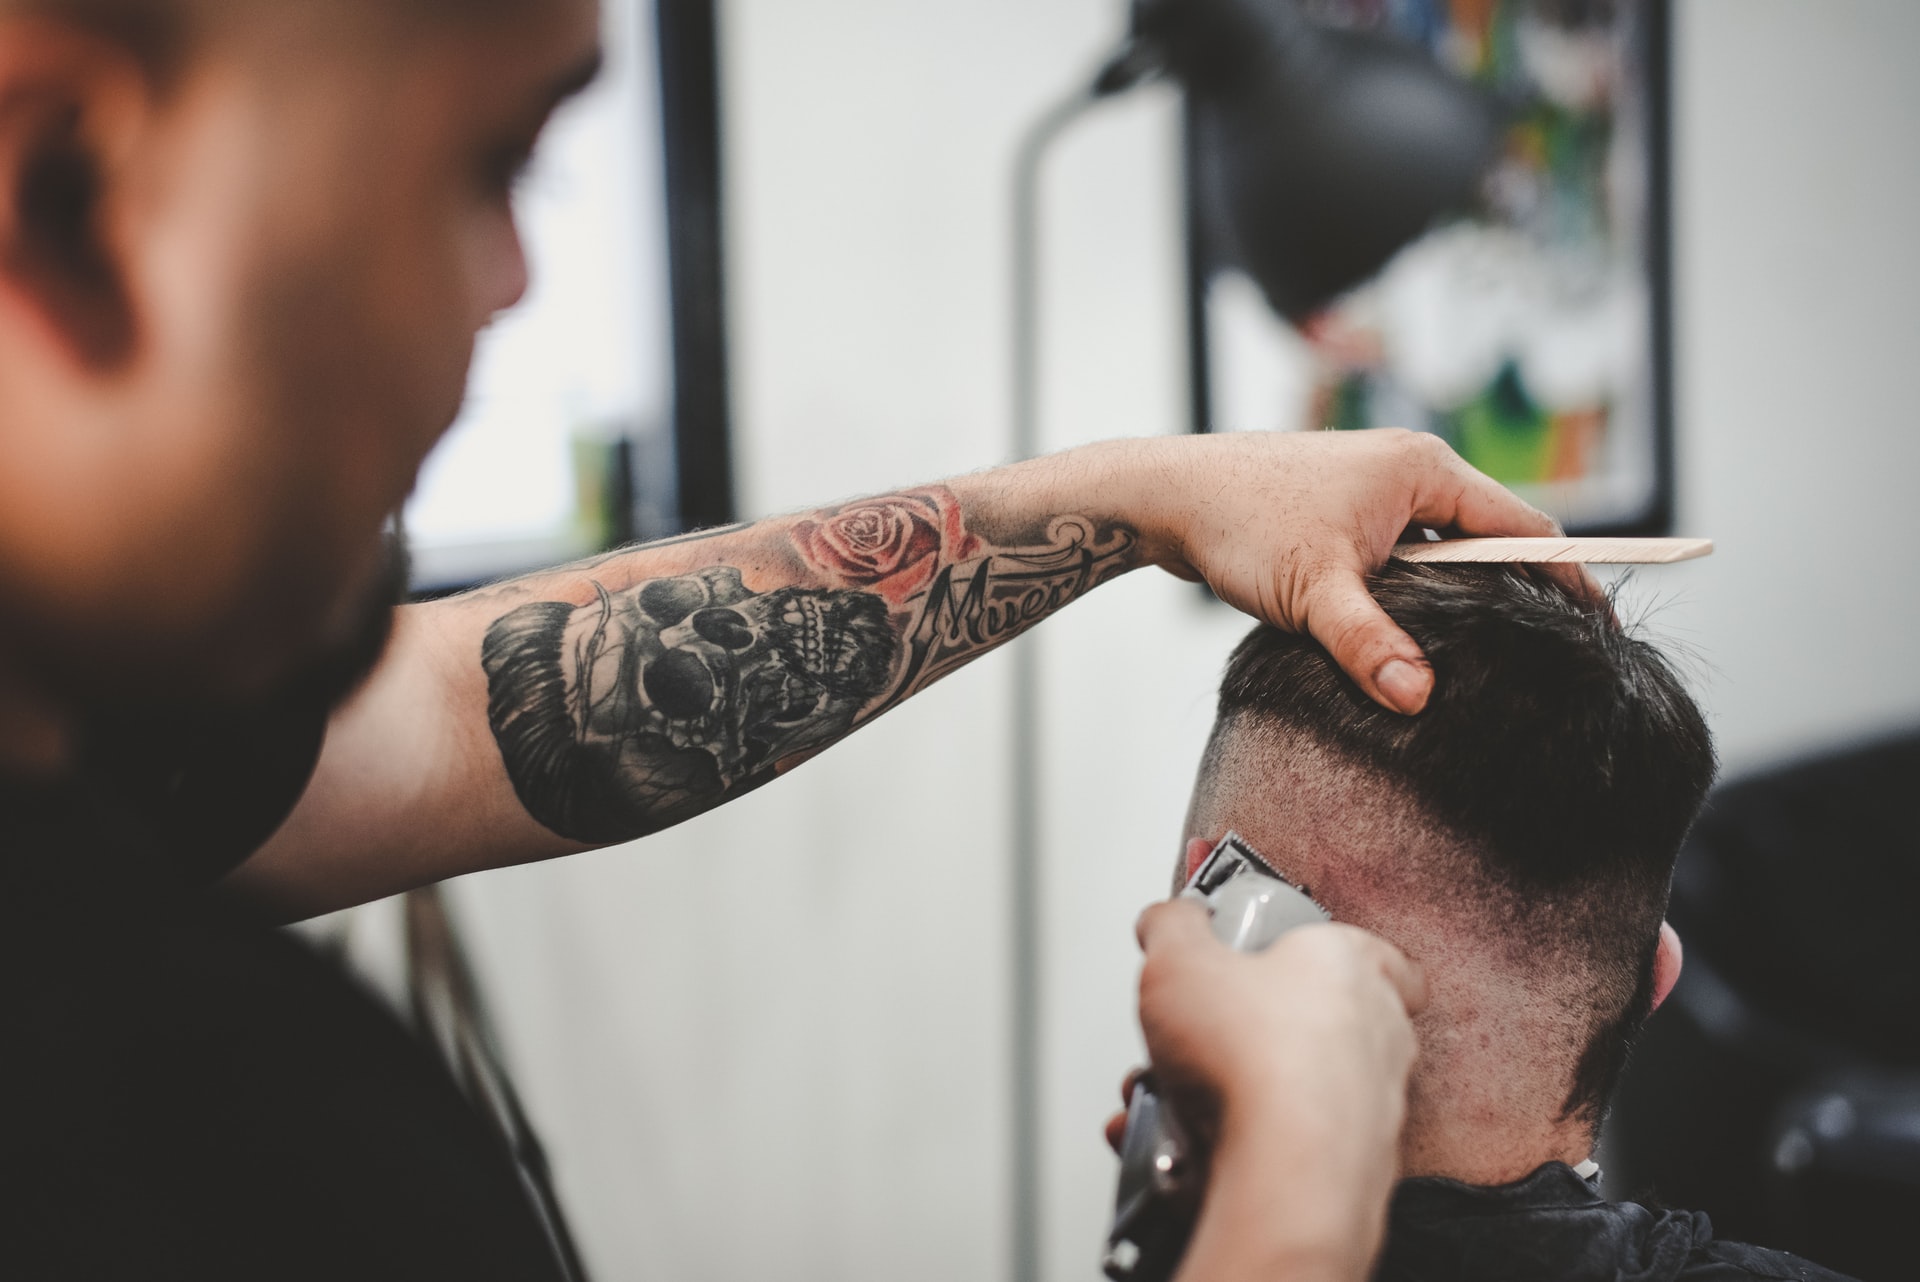 Máquinas de cortar cabelo - As melhores segundo cabeleireiros (Imagem: John Arano/Unsplash)